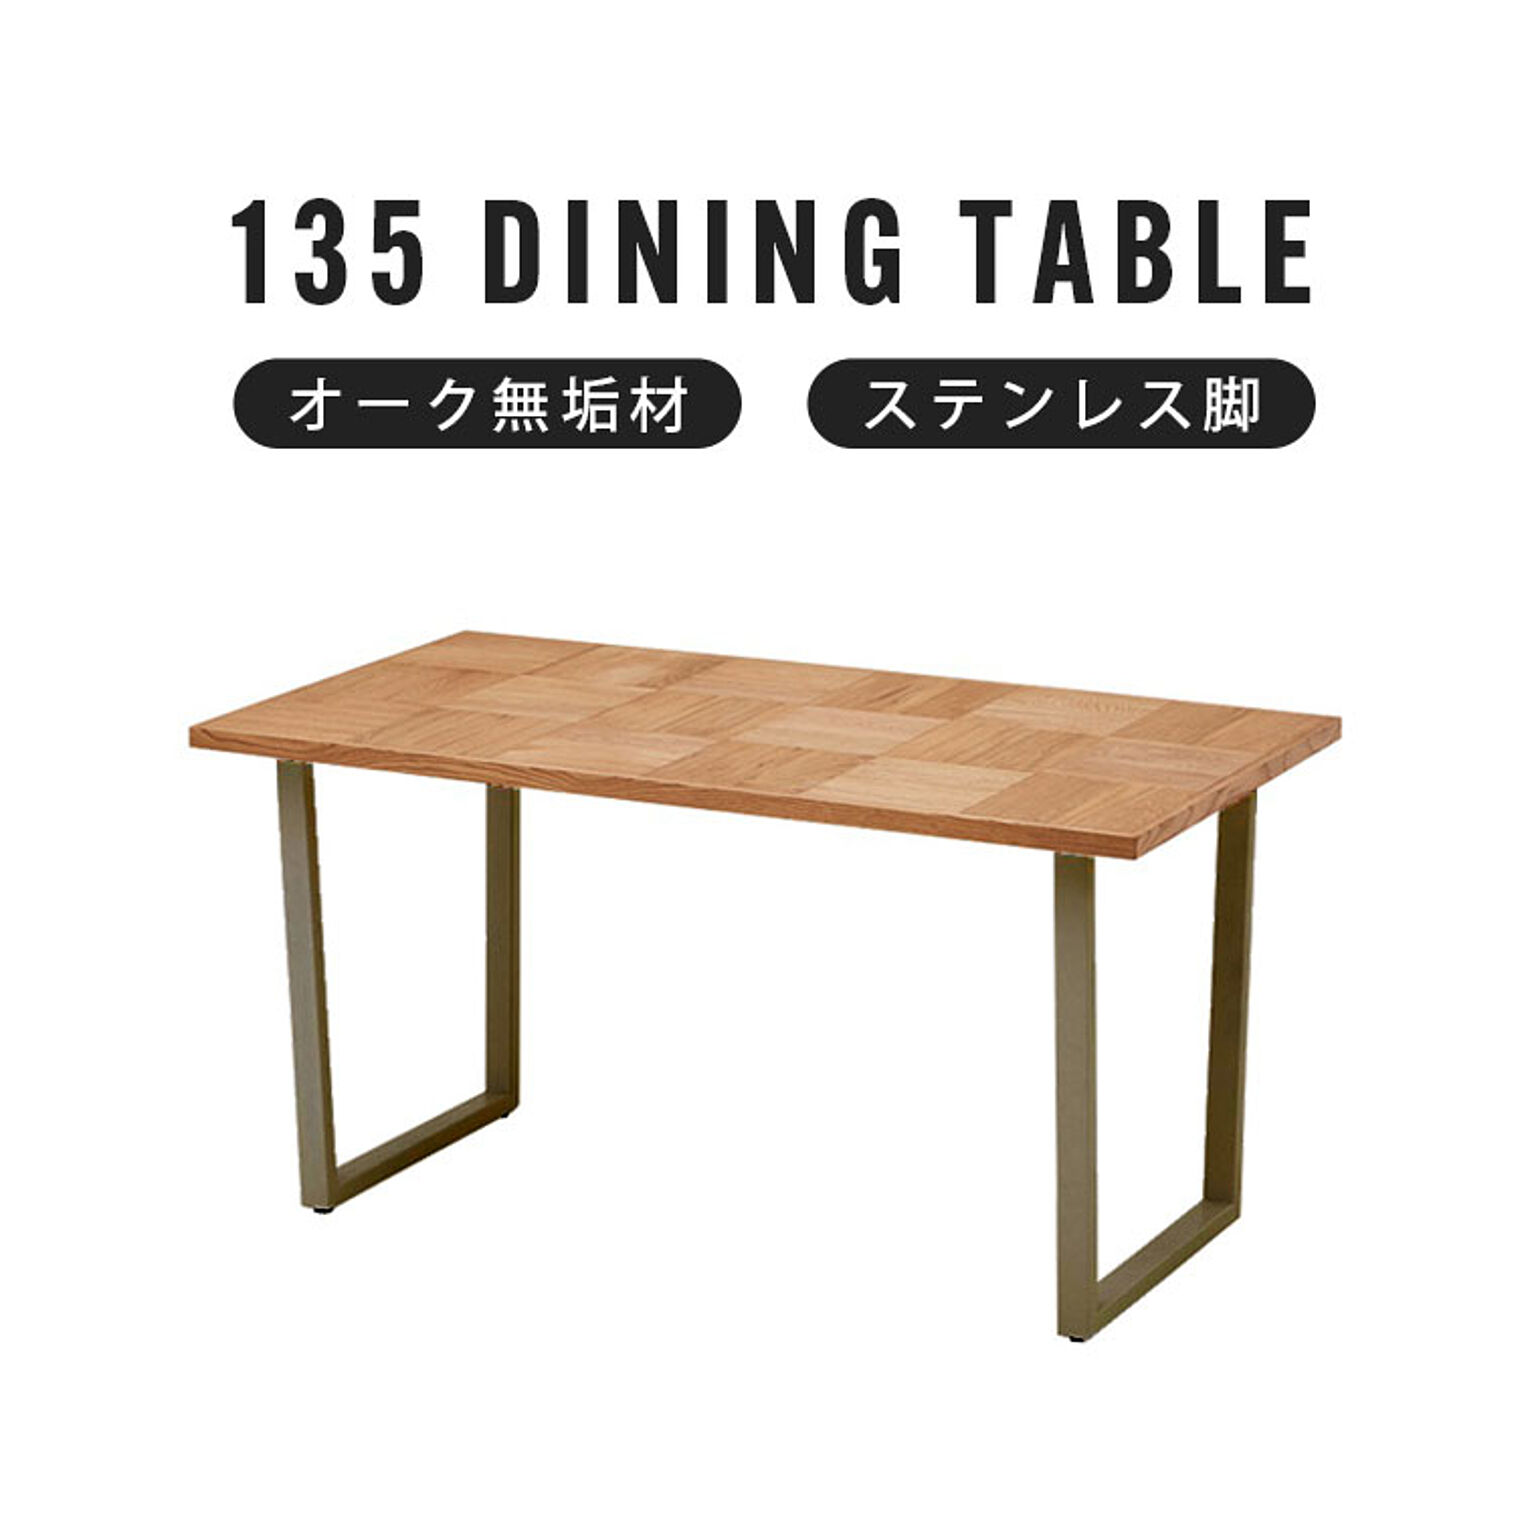 ダイニングテーブル 幅135 食卓テーブル 4人掛け 無垢 木製 レトロ 北欧 モダン ヴィンテージ 西海岸 テーブル 4人用 ブロック柄 ステンレス 艶消し シルバー脚 オーク材 アルゴスブロック